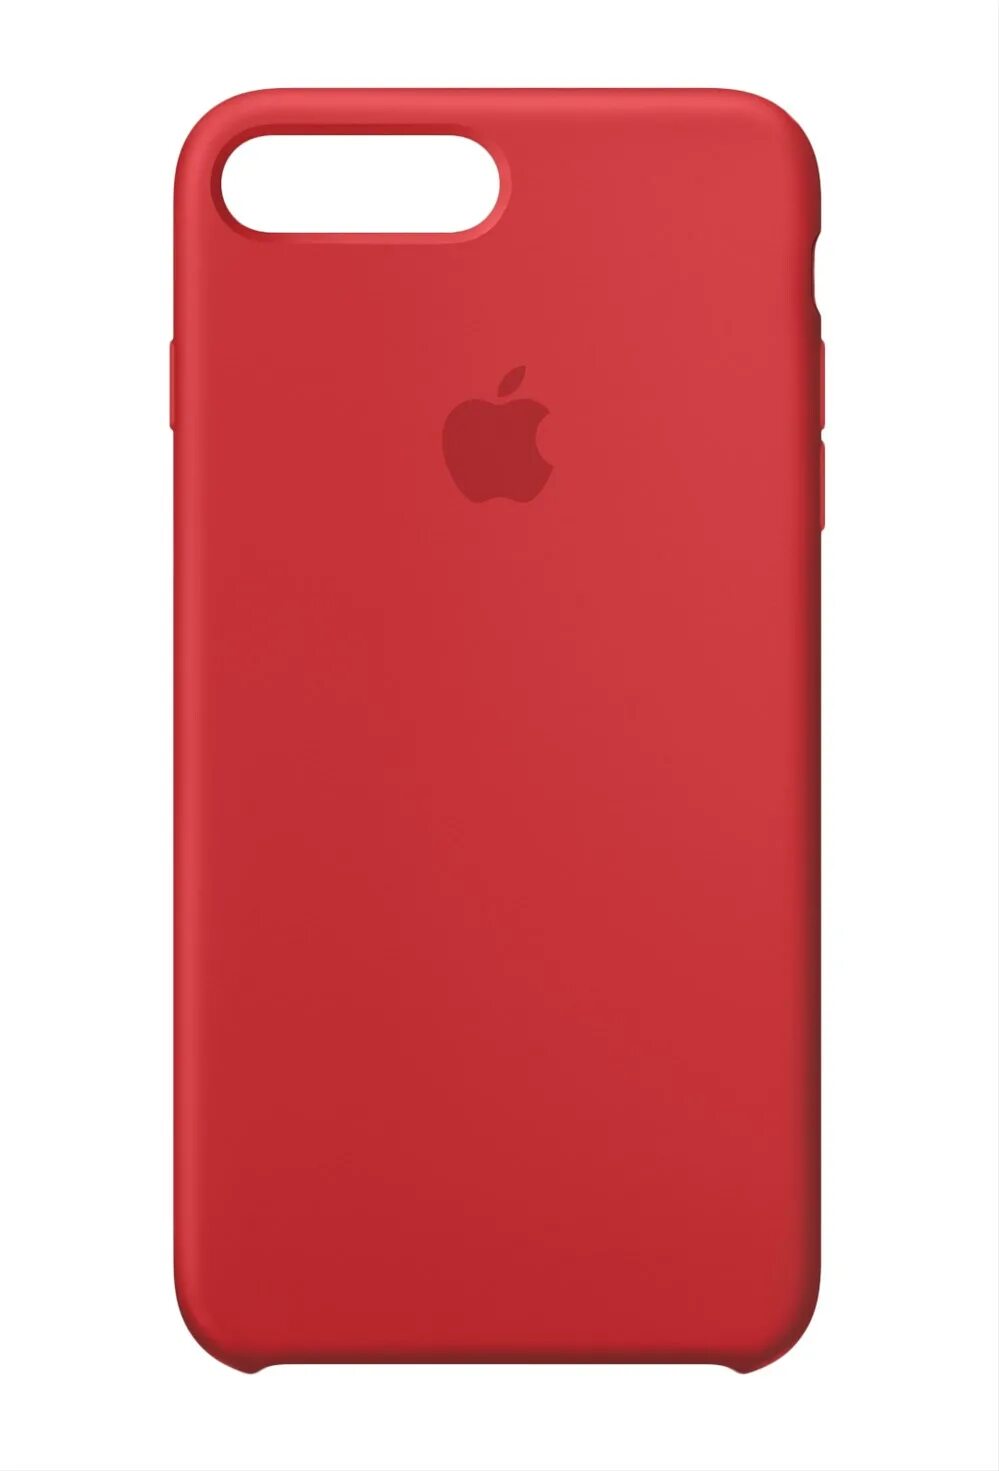 Apple Silicone Case iphone 6s. Apple 7 Plus чехлы. Apple Silicone Case iphone 8. Apple Silicone Case iphone 7. Чехлы апл